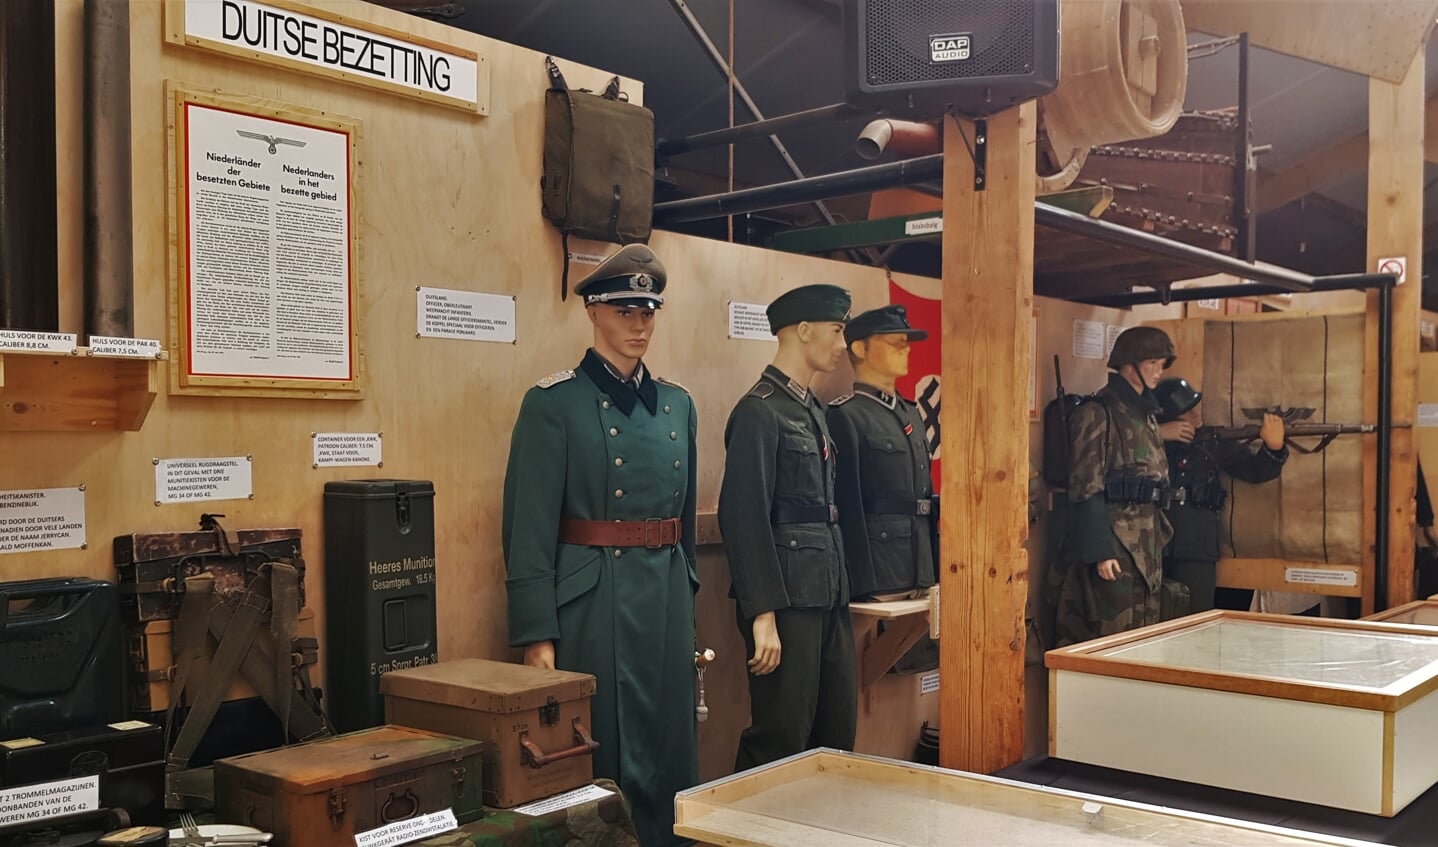 Vele uniformen en andere materialen die met de bezetting te maken hebben zijn te zien tijdens de expositie '75 jaar bevrijding' in Zelhem. Foto: Alice Rouwhorst